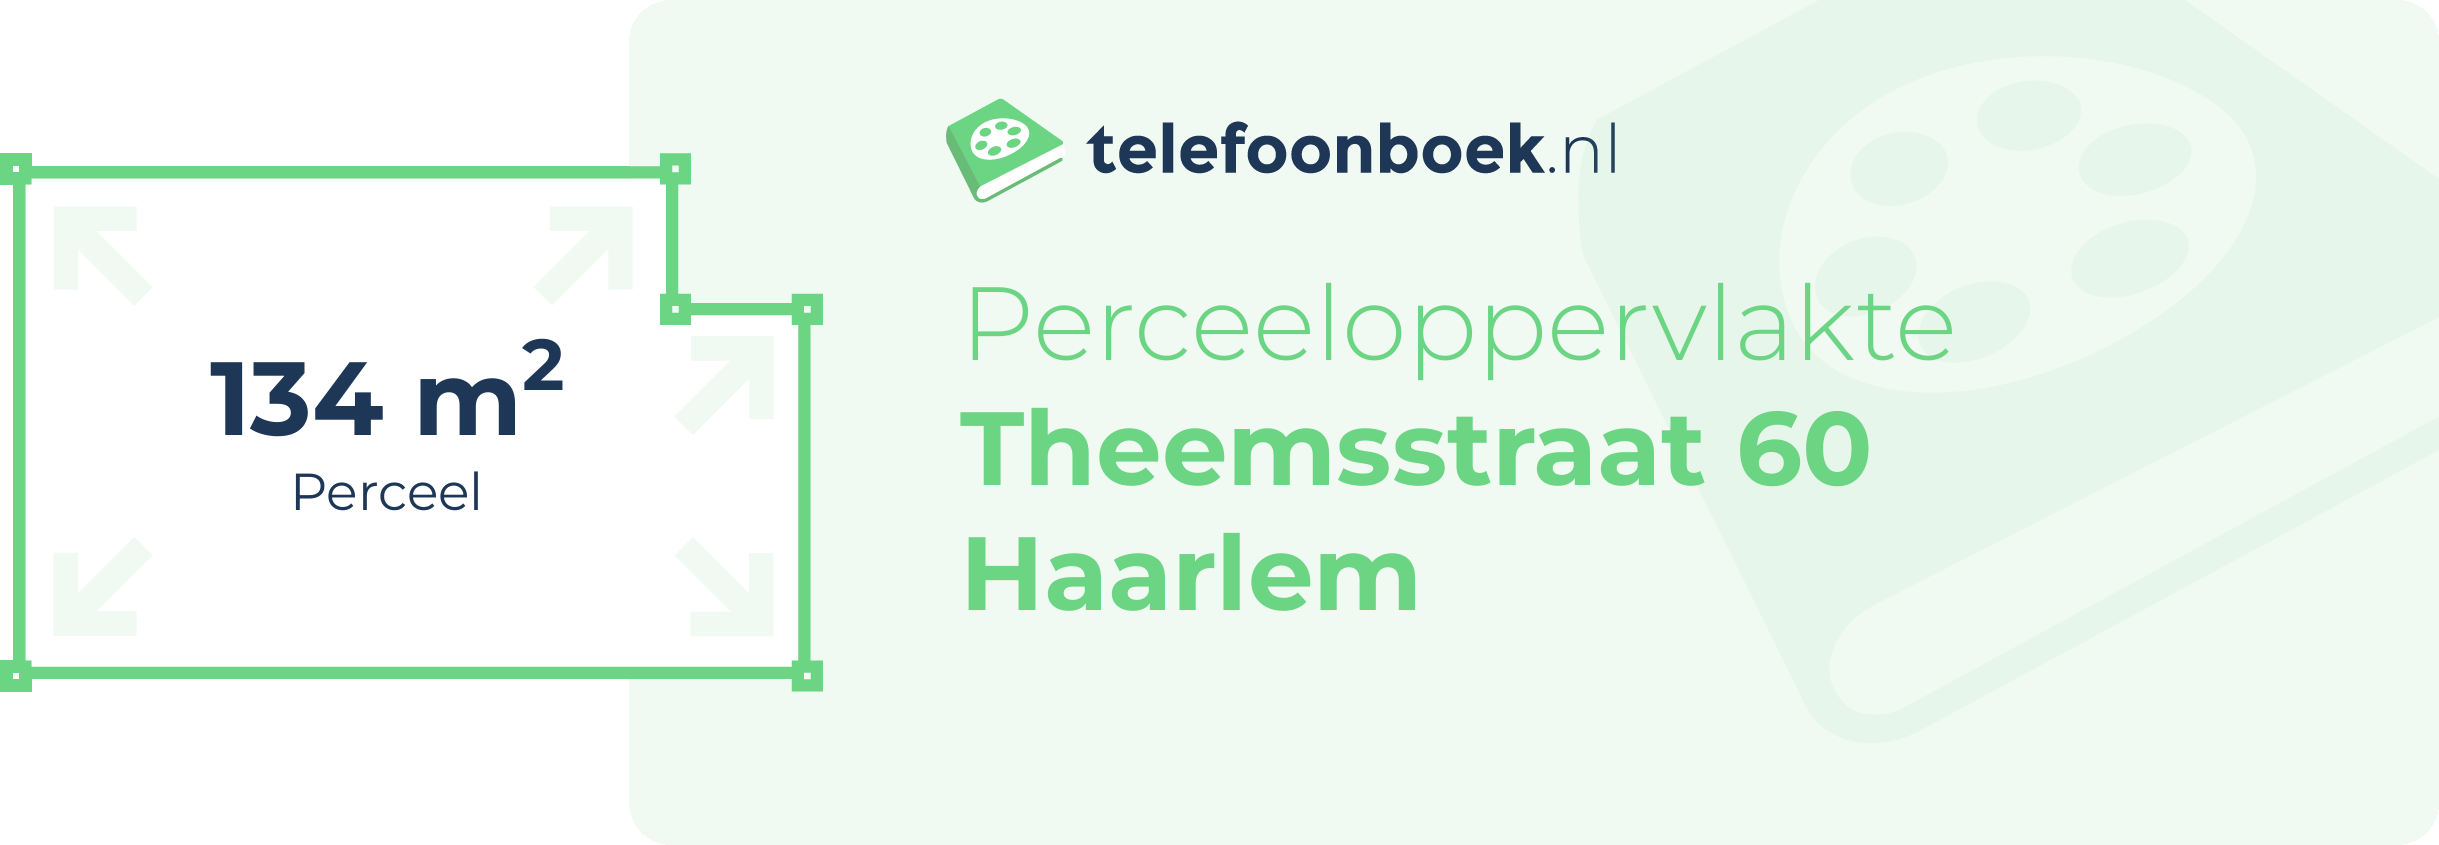 Perceeloppervlakte Theemsstraat 60 Haarlem